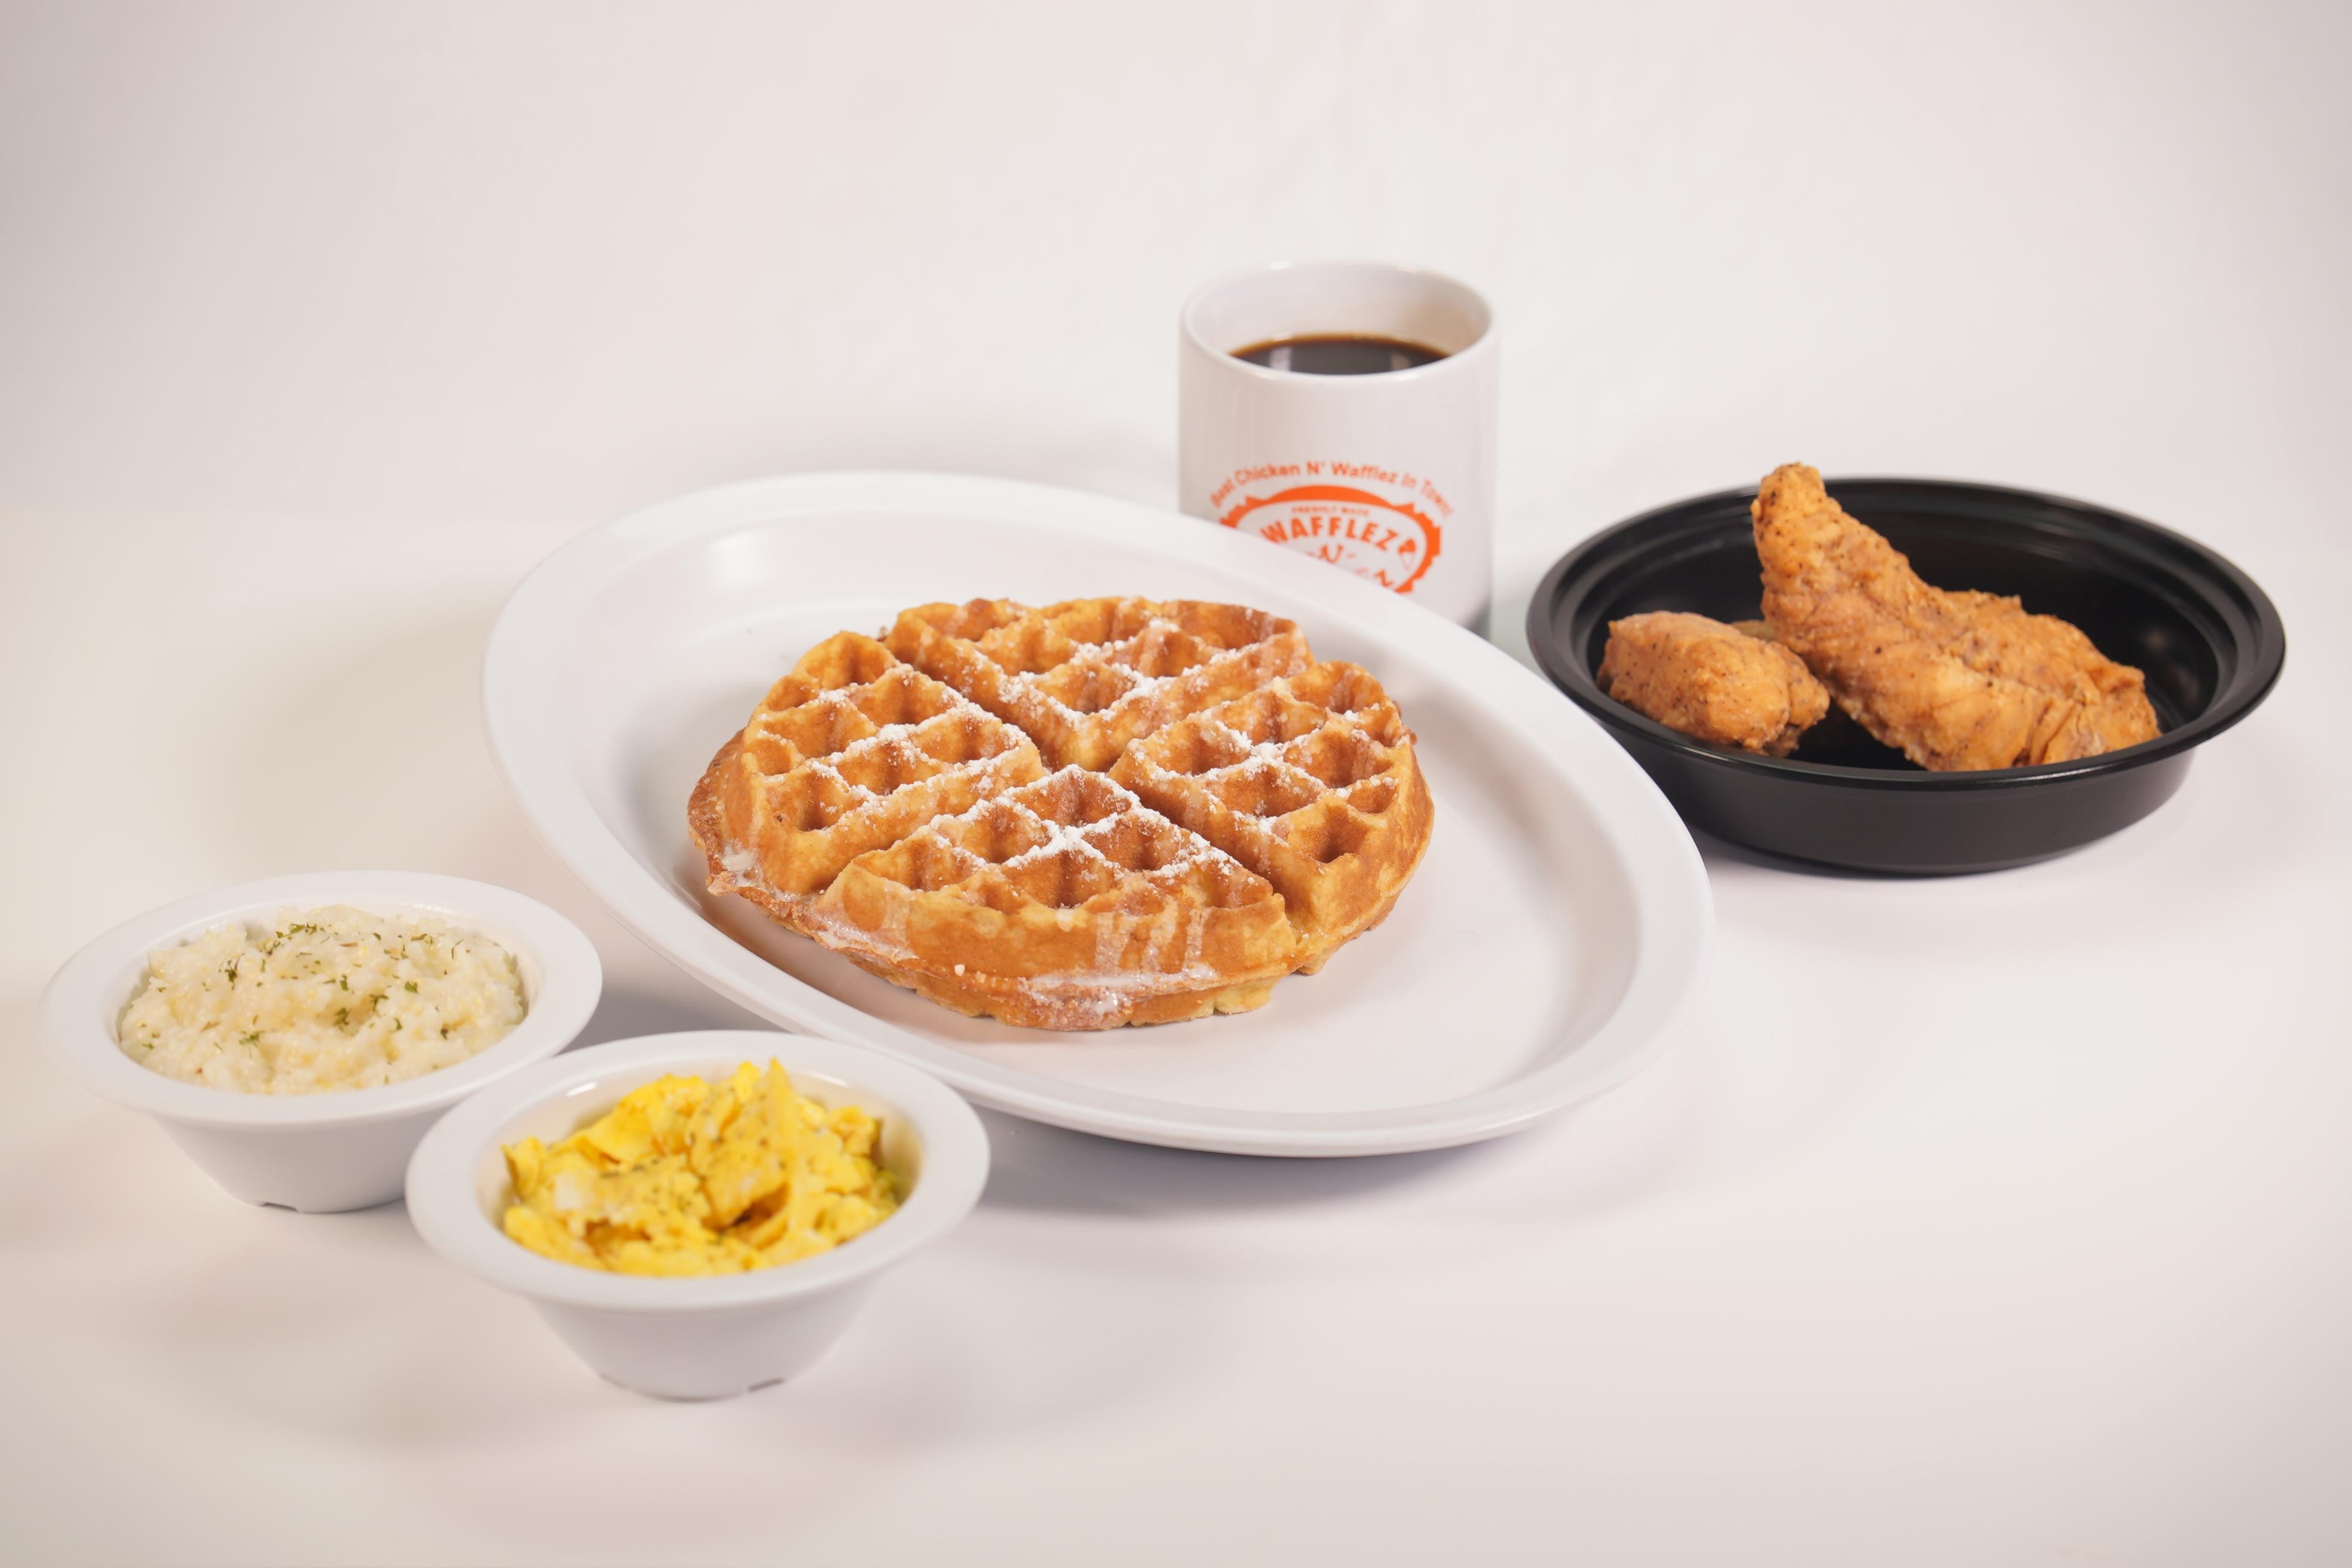 Full Waffle Breakfast W/ Tenders